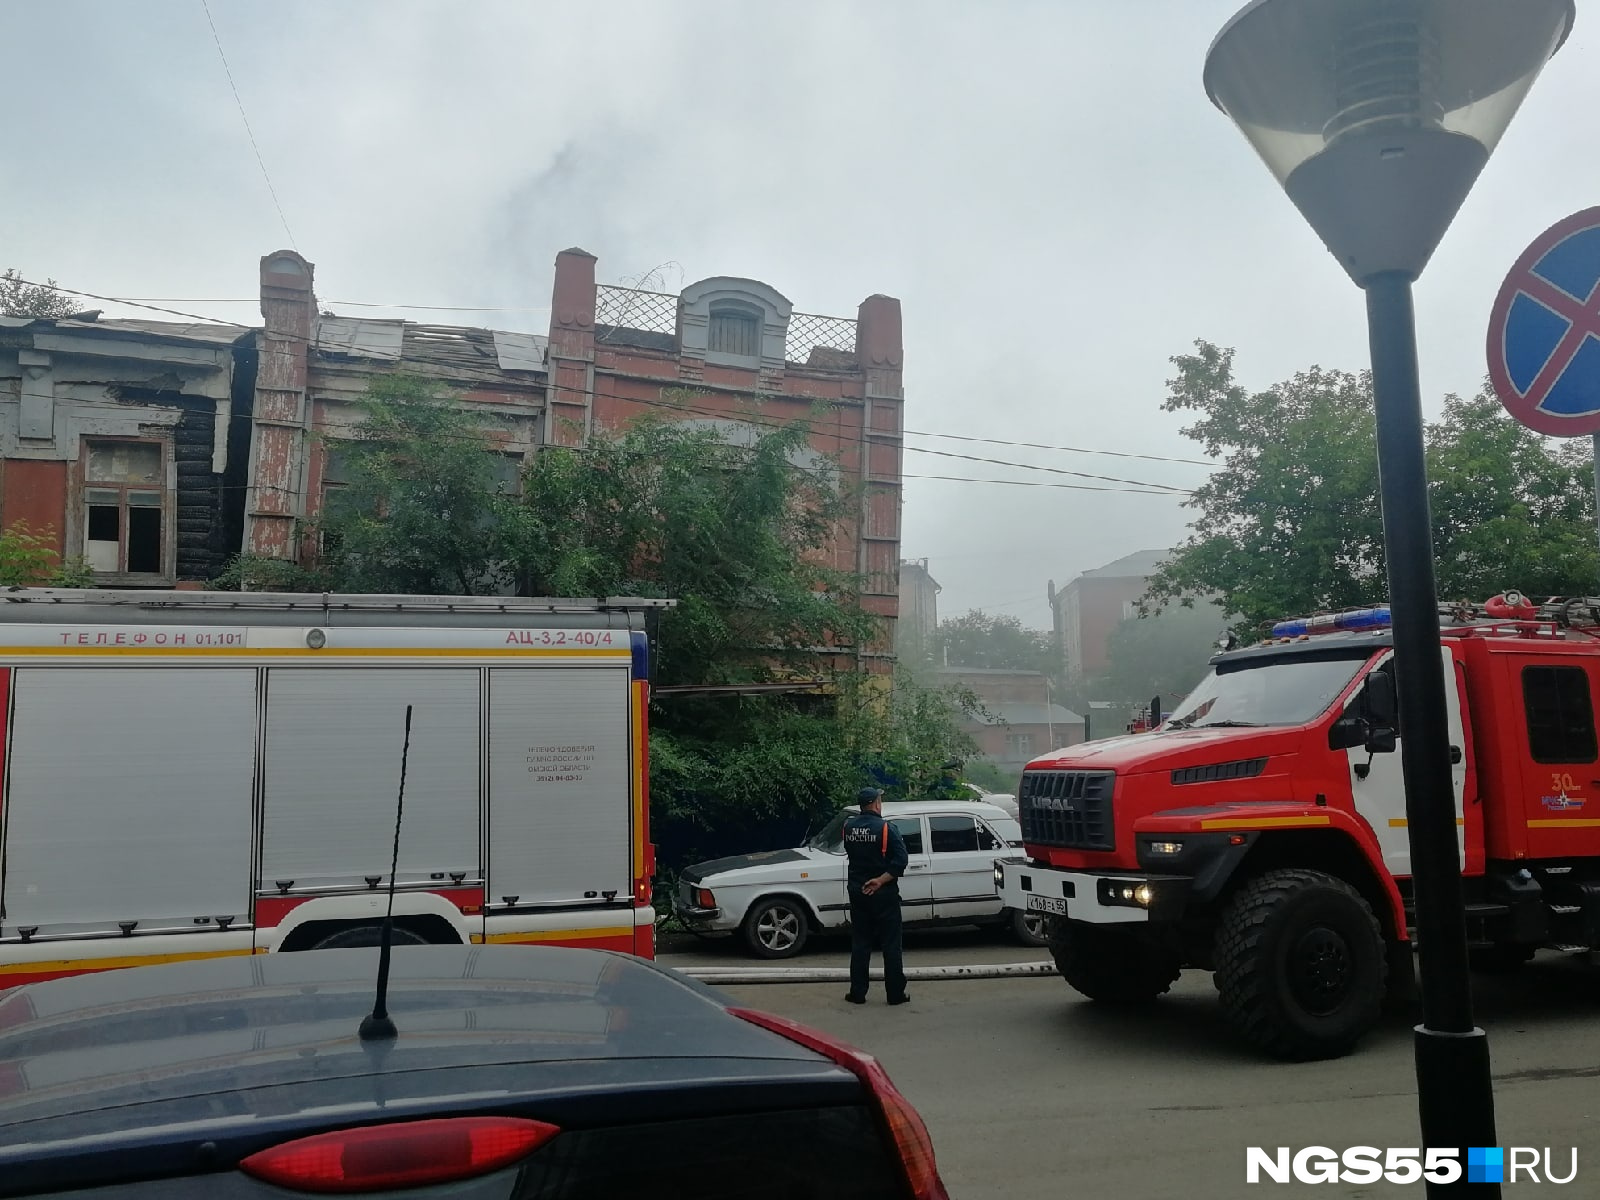 Проезд через Газетный переулок почти полностью заблокирован пожарными машинами